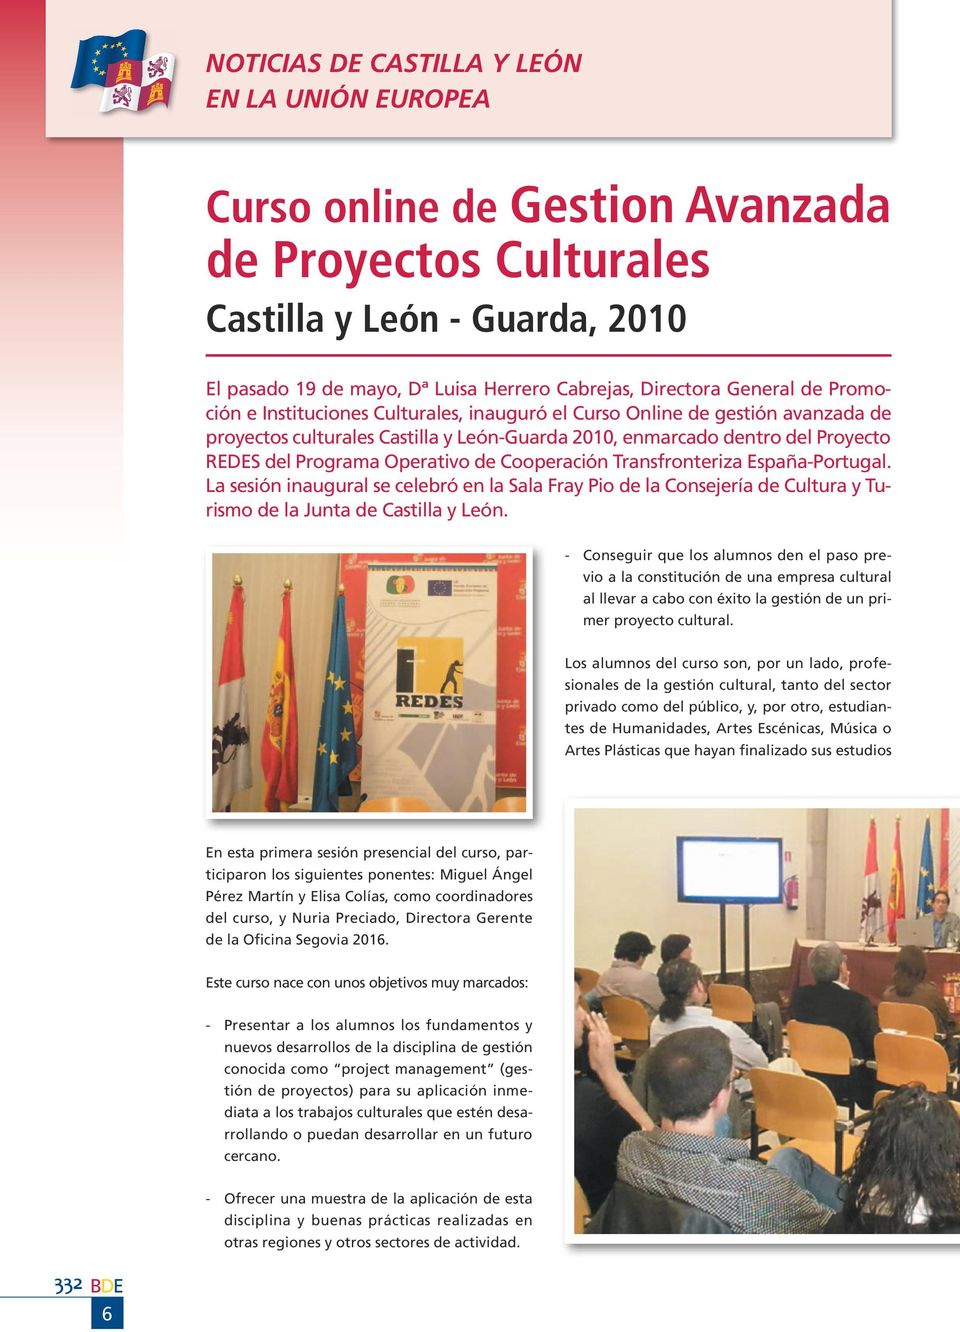 España-Portugal. La sesión inaugural se celebró en la Sala Fray Pio de la Consejería de Cultura y Turismo de la Junta de Castilla y León.